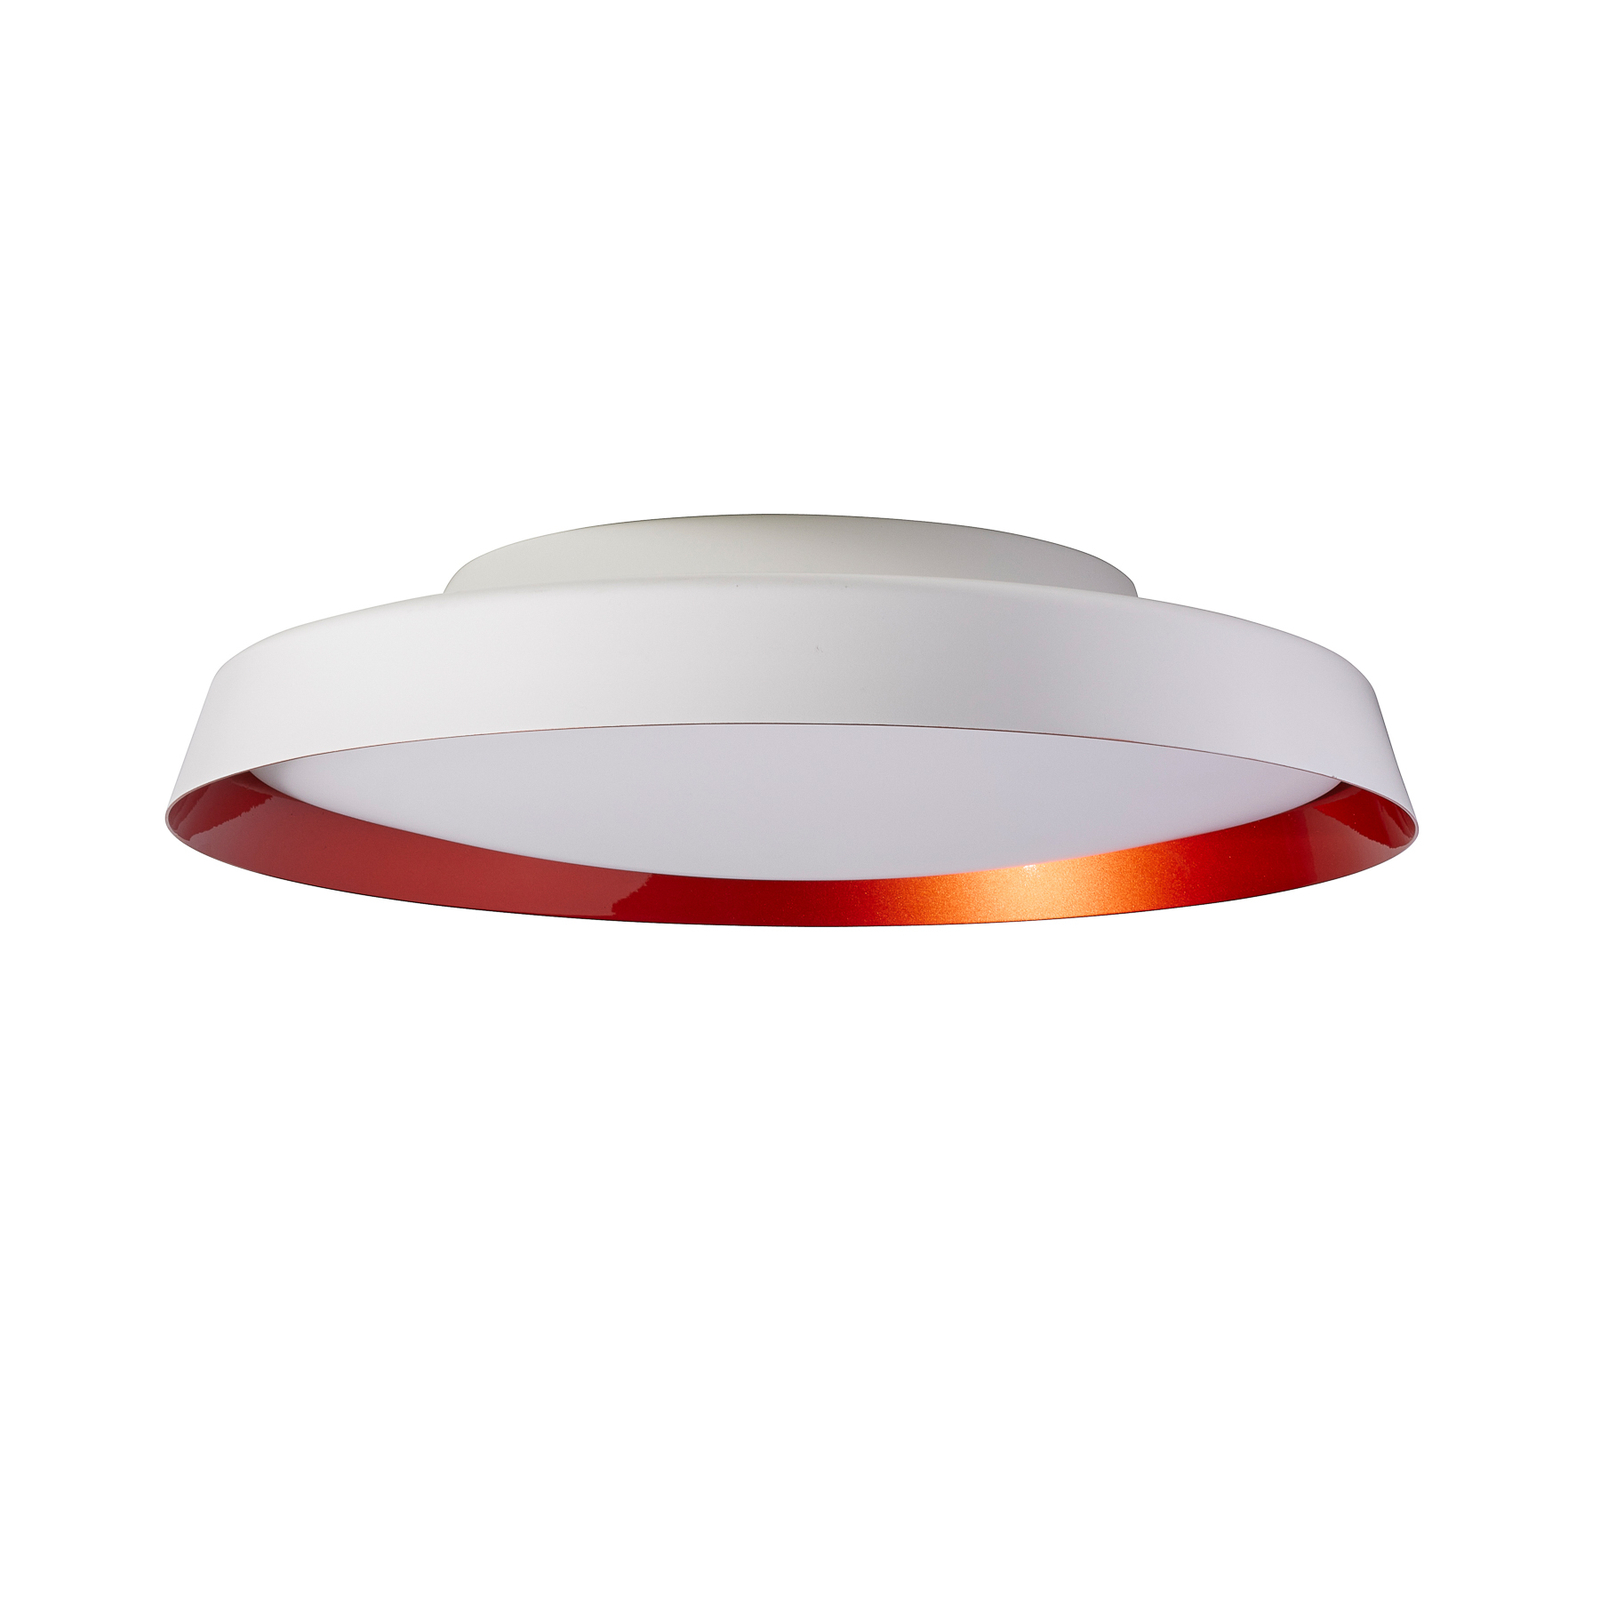 Boop! LED ceiling light Ø 54 cm white/red metallic